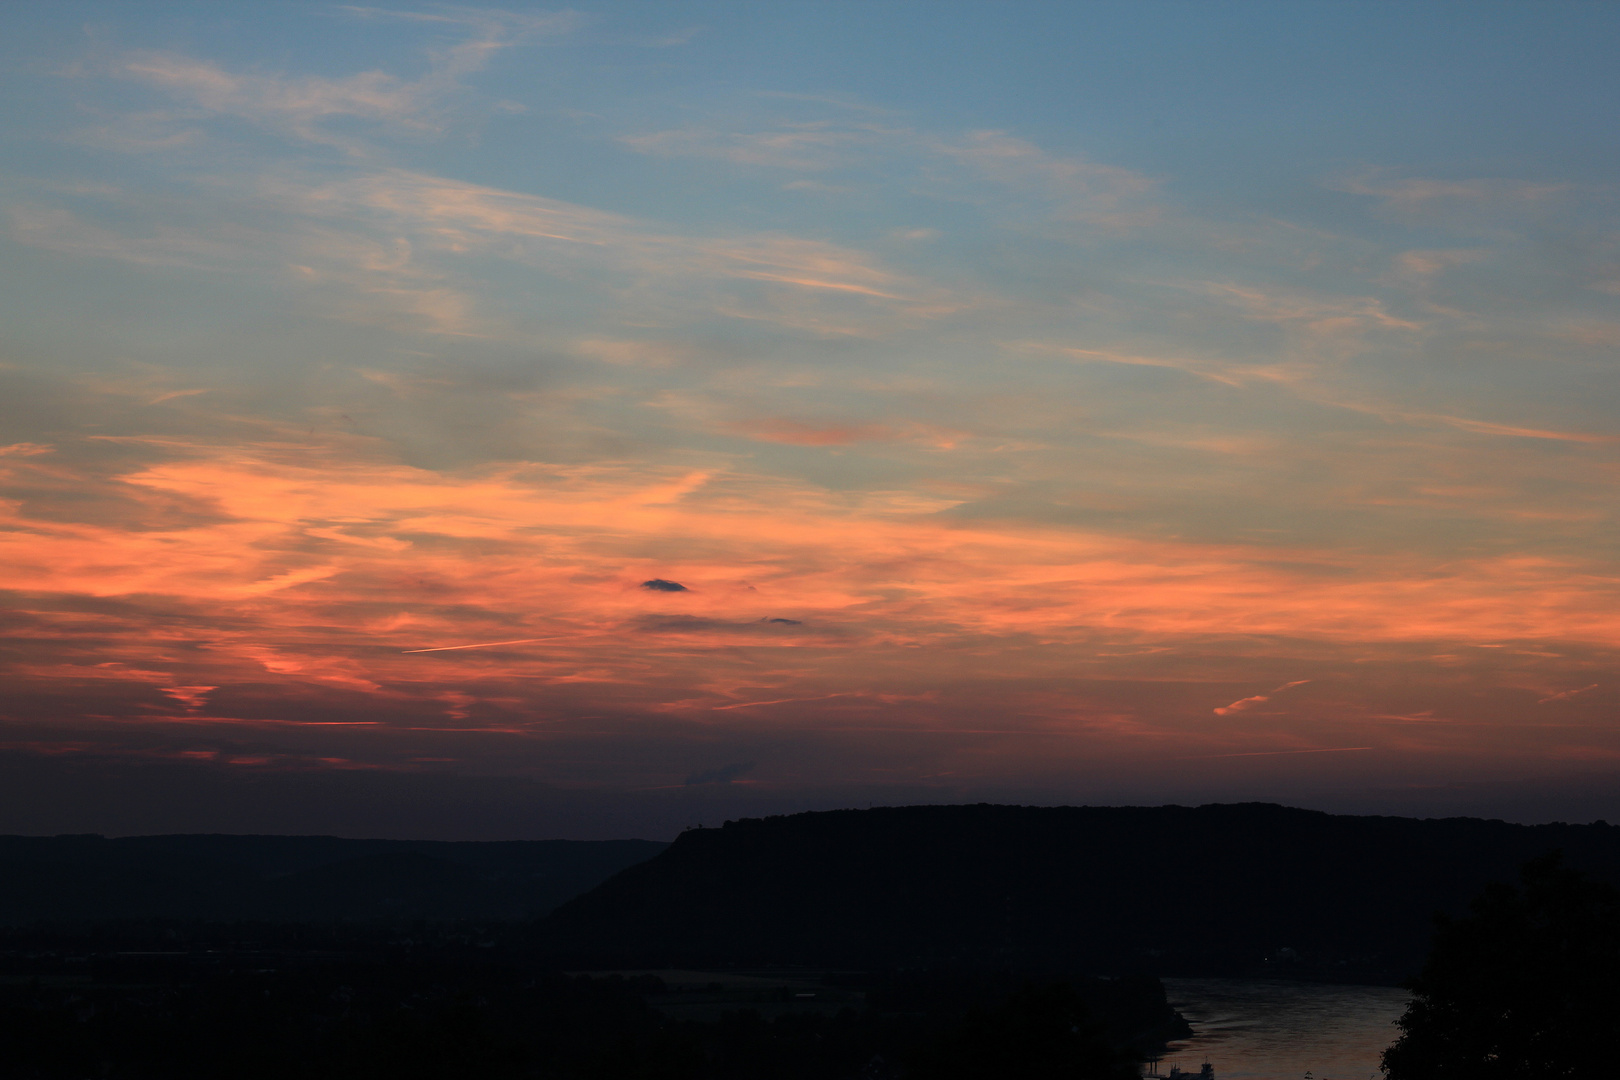 Sonnenuntergang in Rheinland-Pfalz